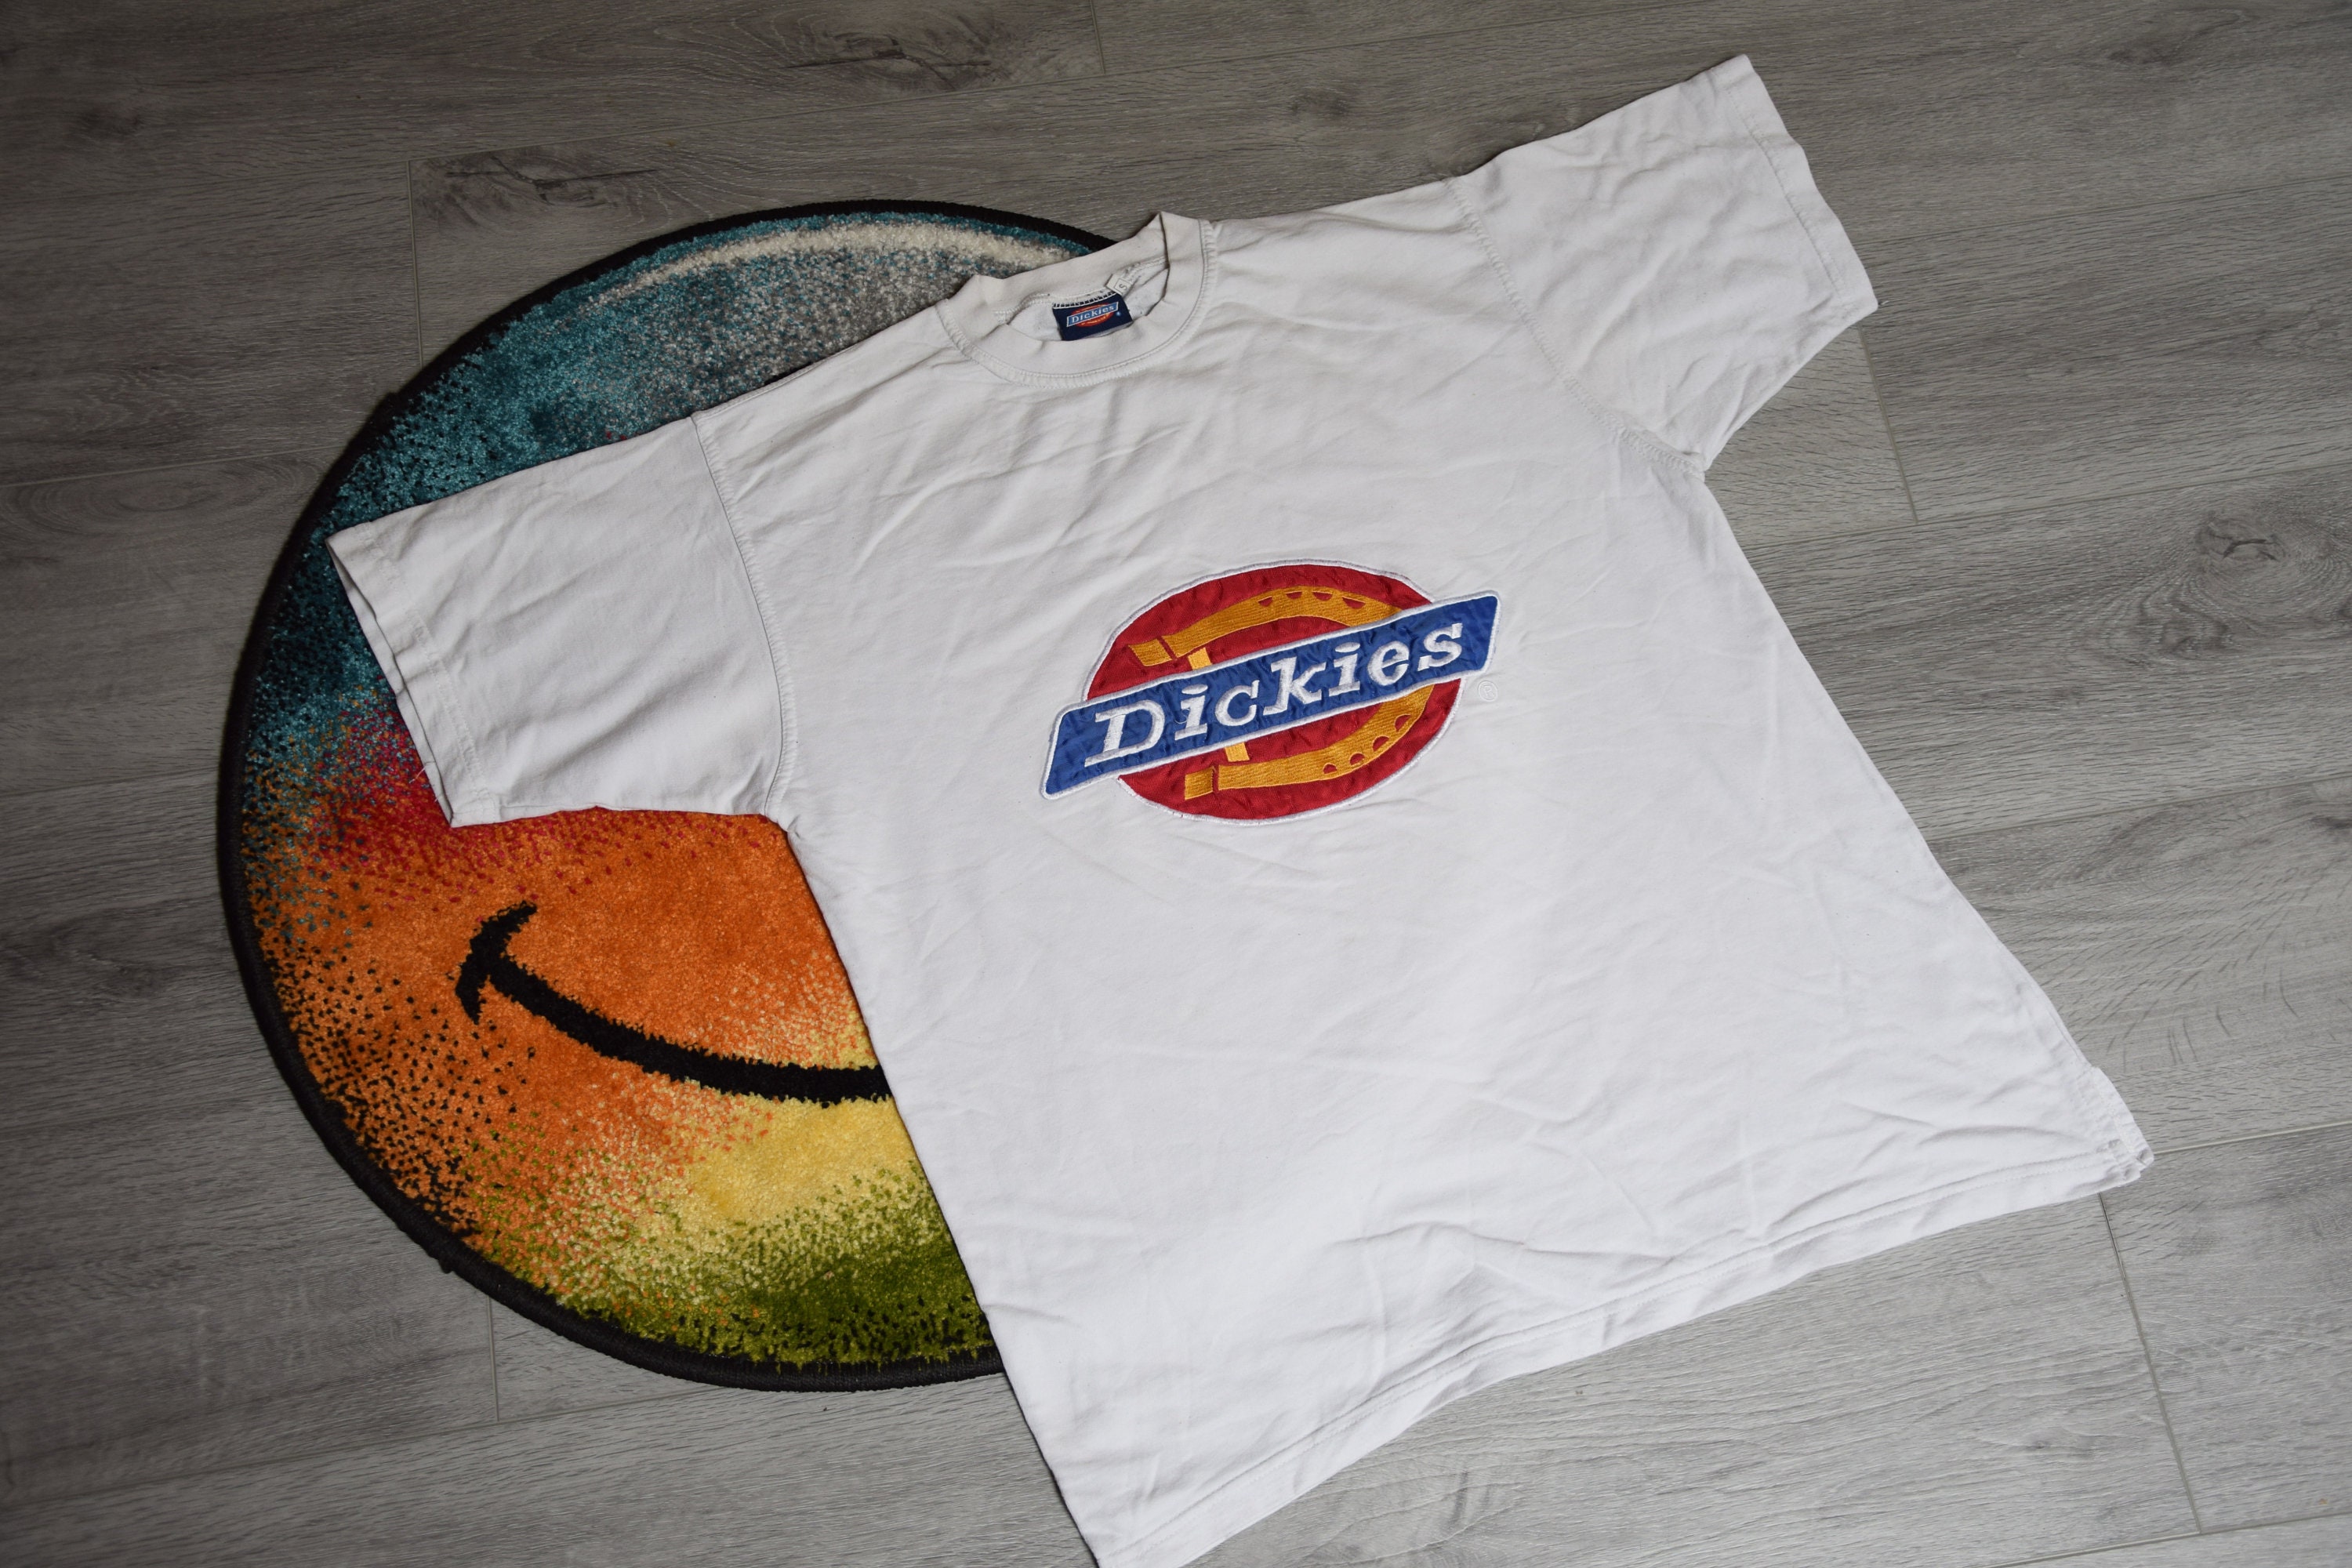 Tidsplan følelsesmæssig Kontinent 90s vintage Dickies shirt Size Large vtg white embroidered - Etsy 日本